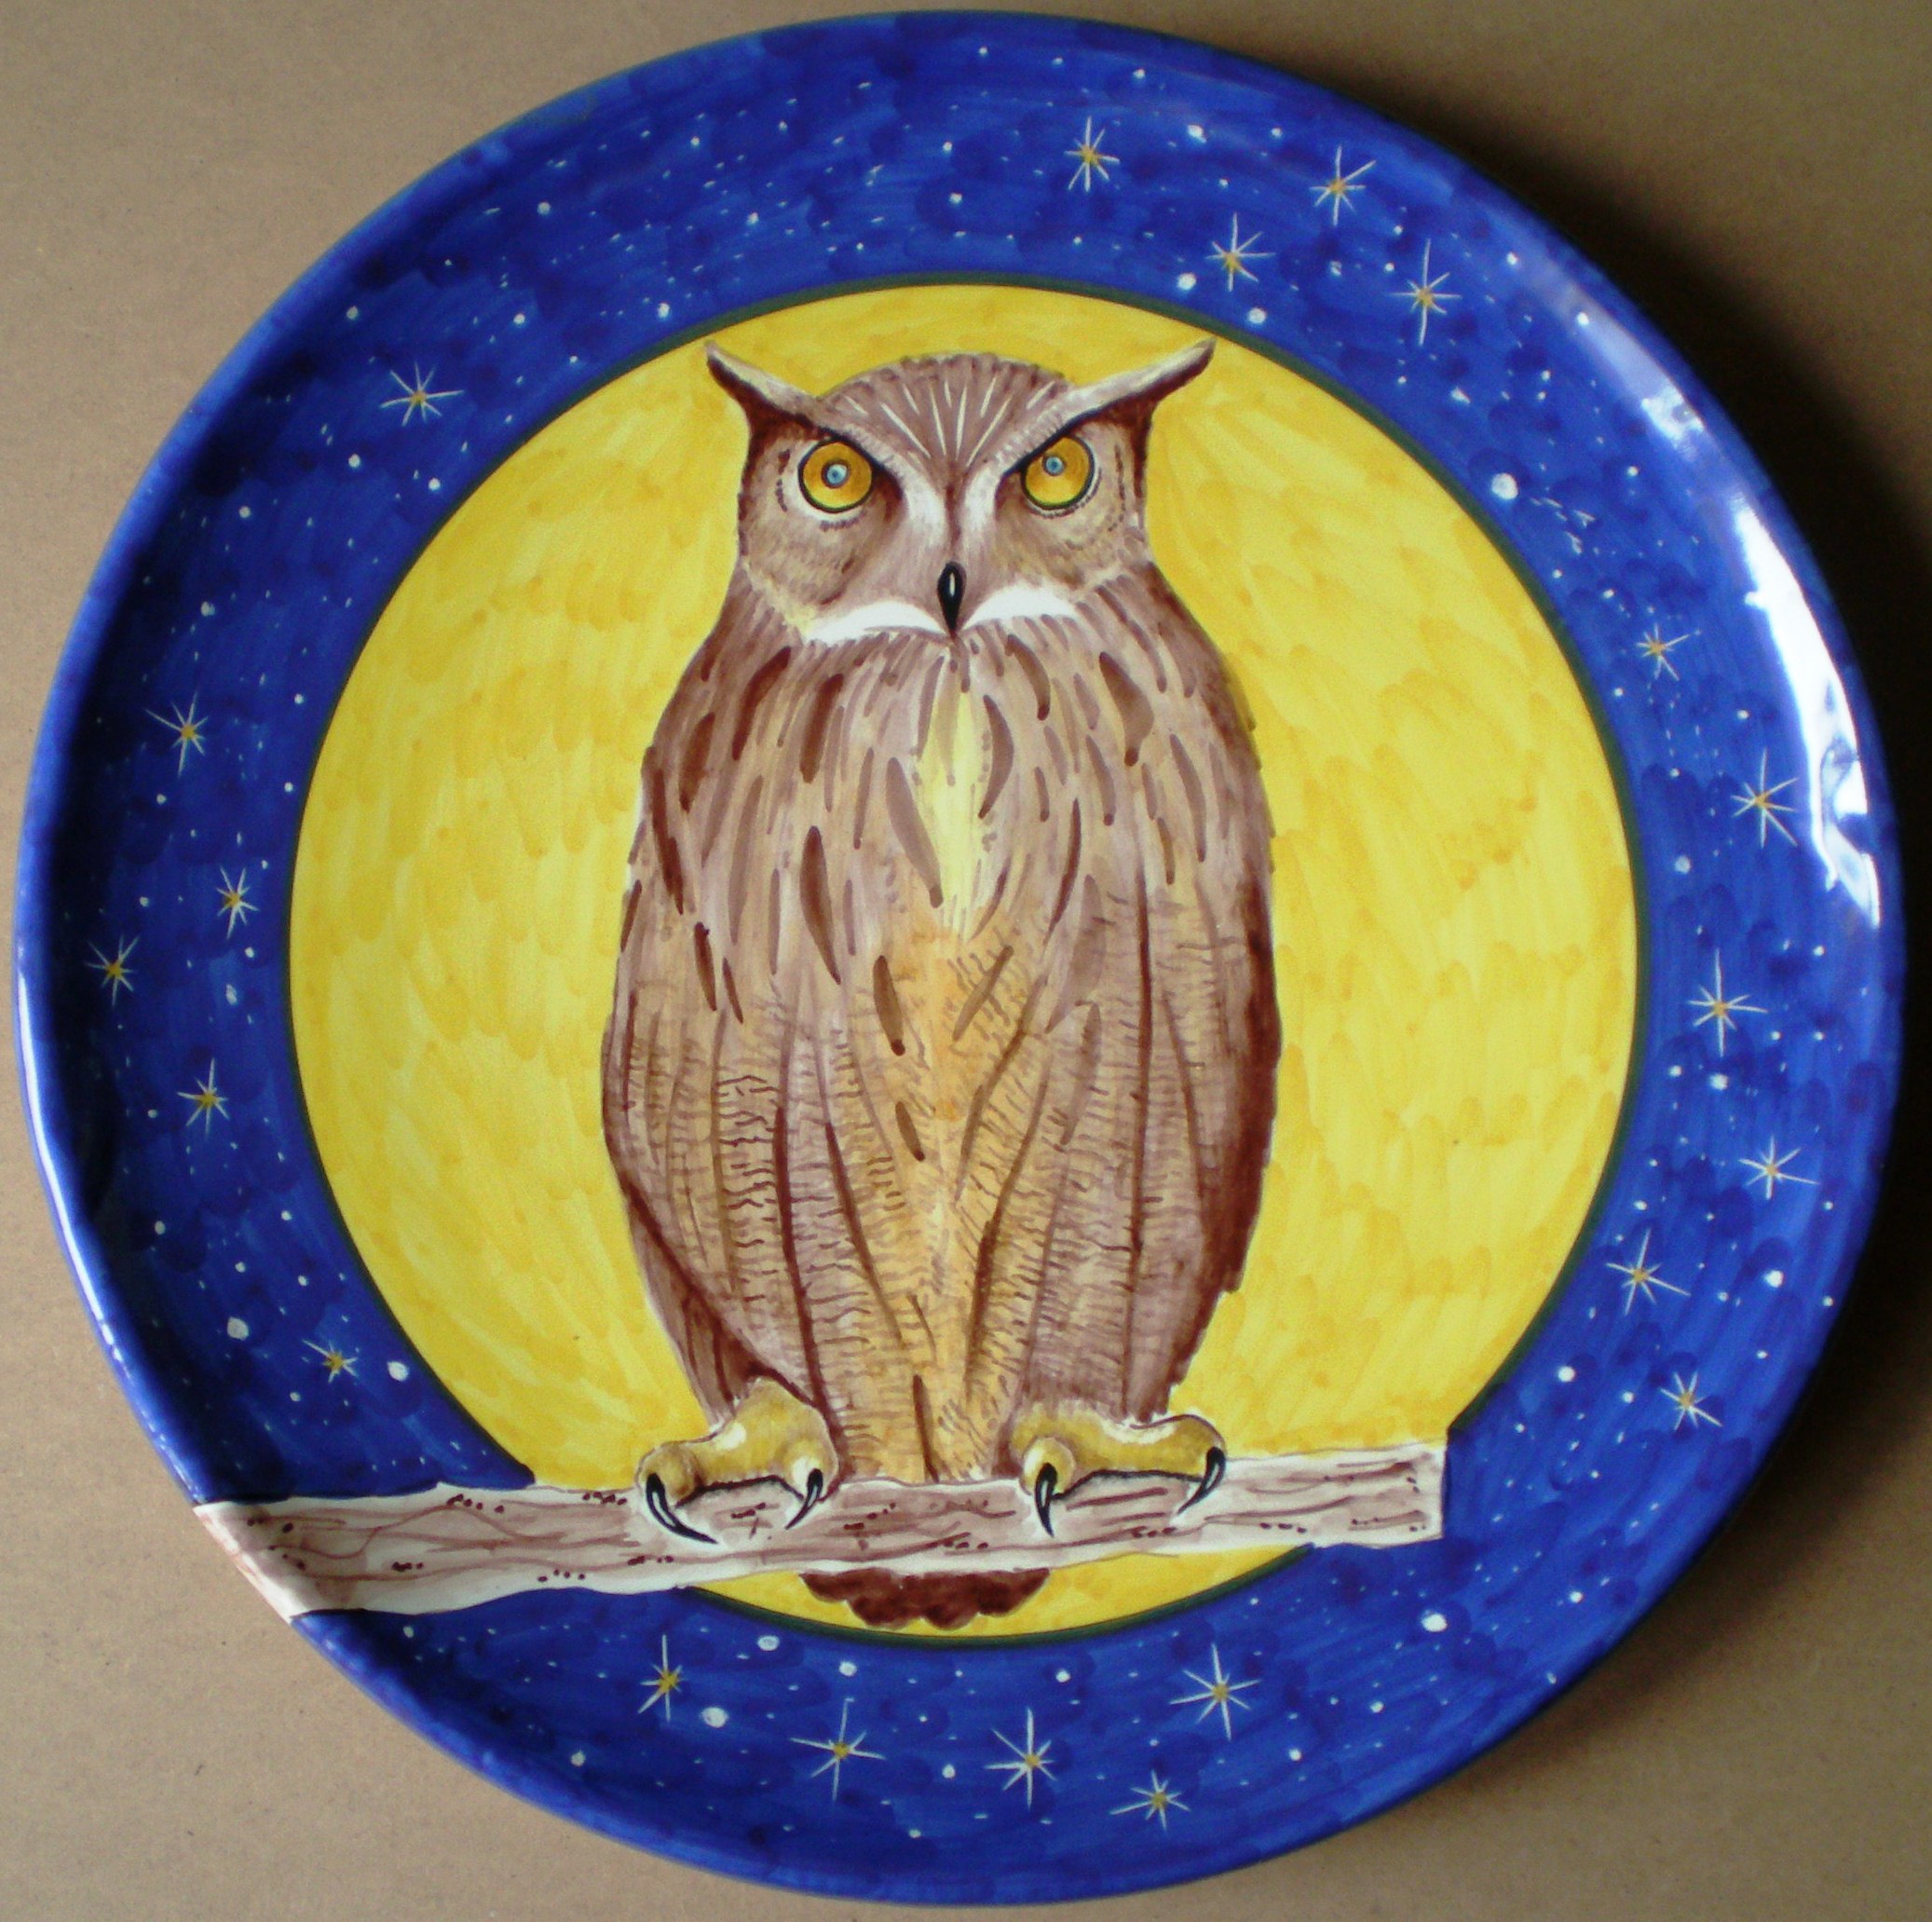 Gufo (Owl), 2004 diametro 40 cm, ceramica artistica (ceramic art), Pasquale Mastrogiacomo, Acerno (SA).